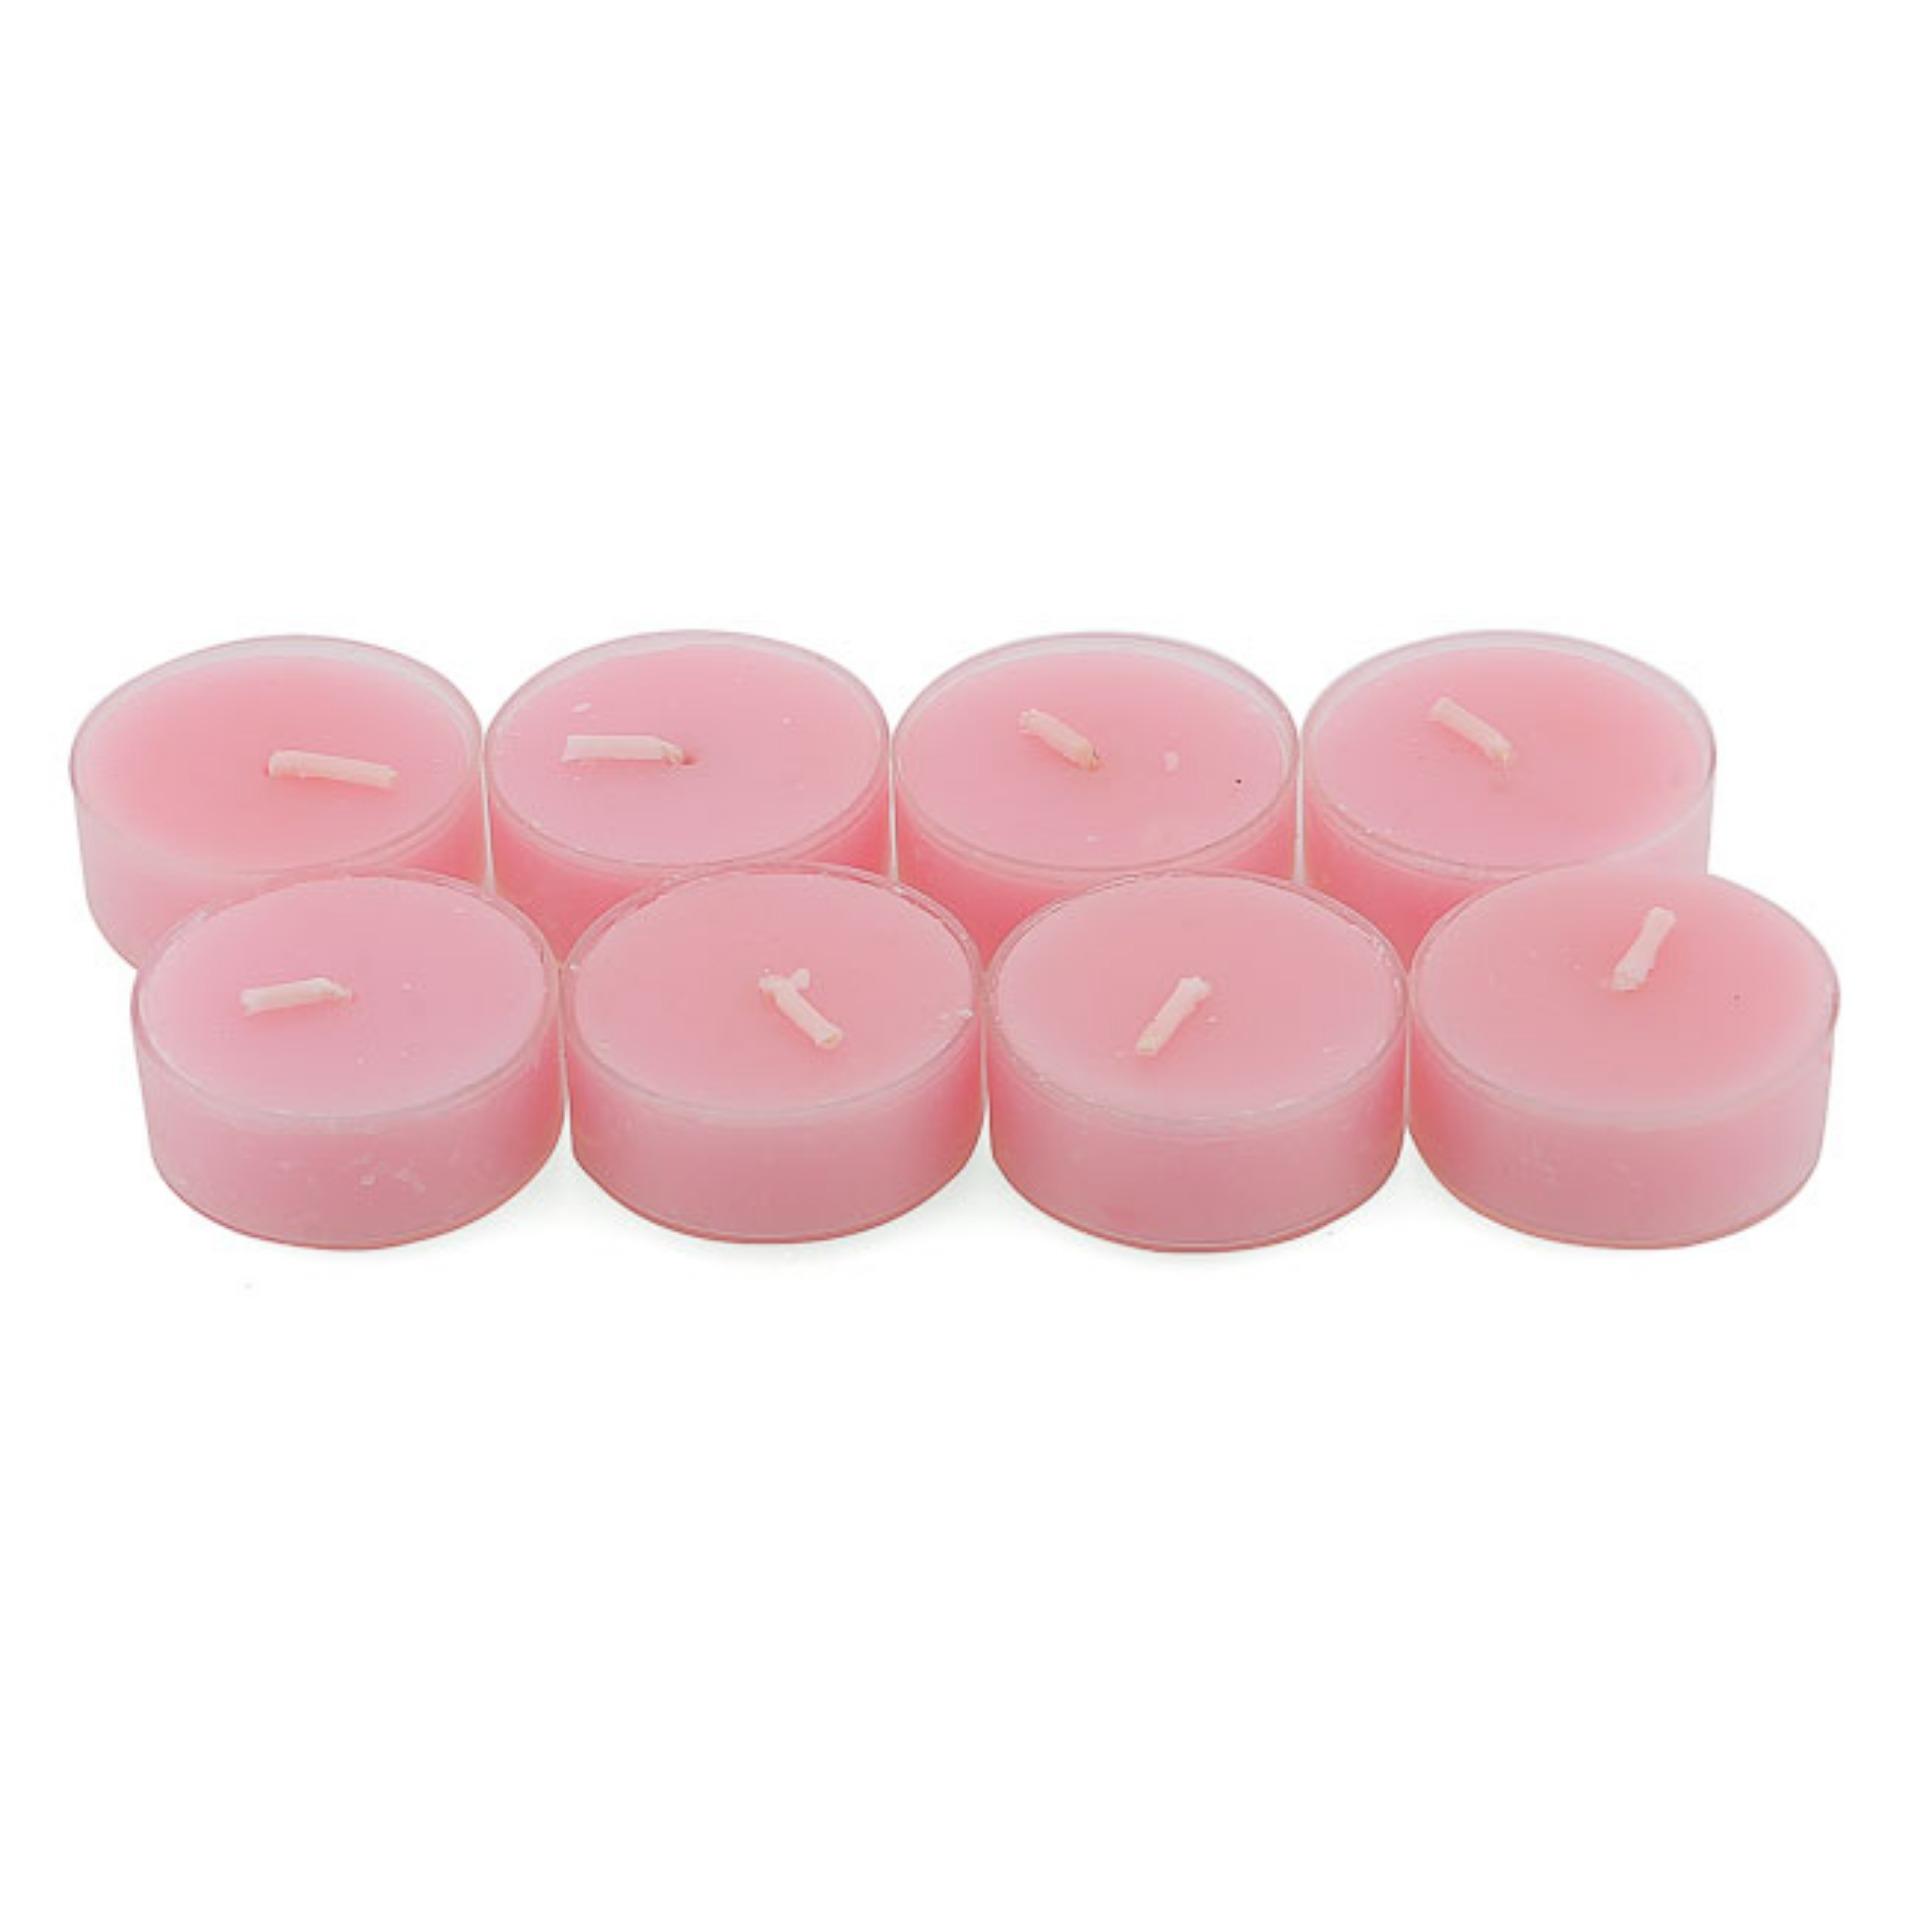 Bộ 6 hộp nến tealight thơm đế nhựa (8 nến/hộp) NQM FtraMart (Hồng)